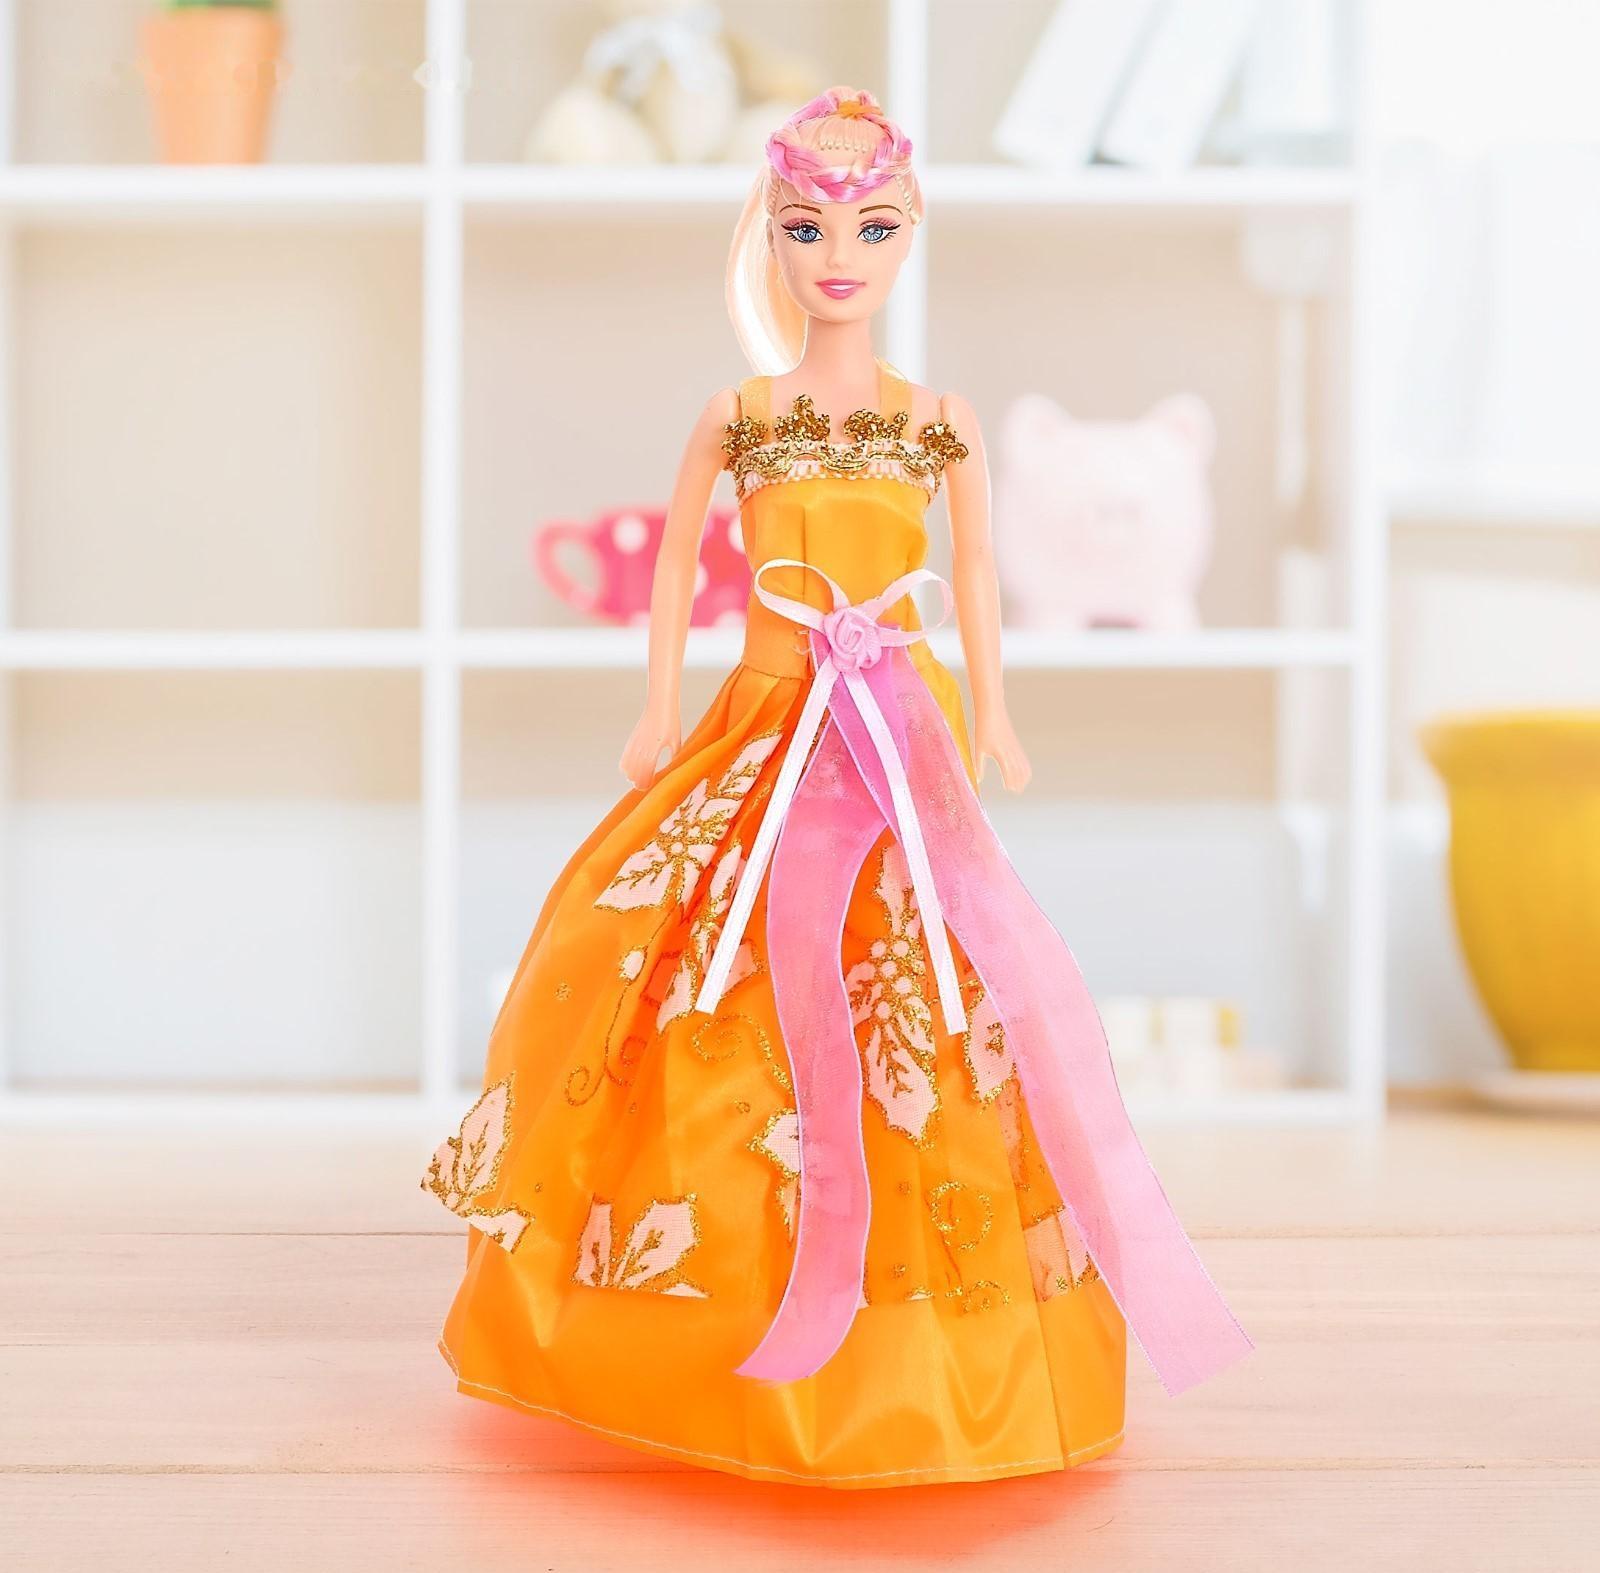 Кукла-модель «Анита» в бальном платье, МИКС